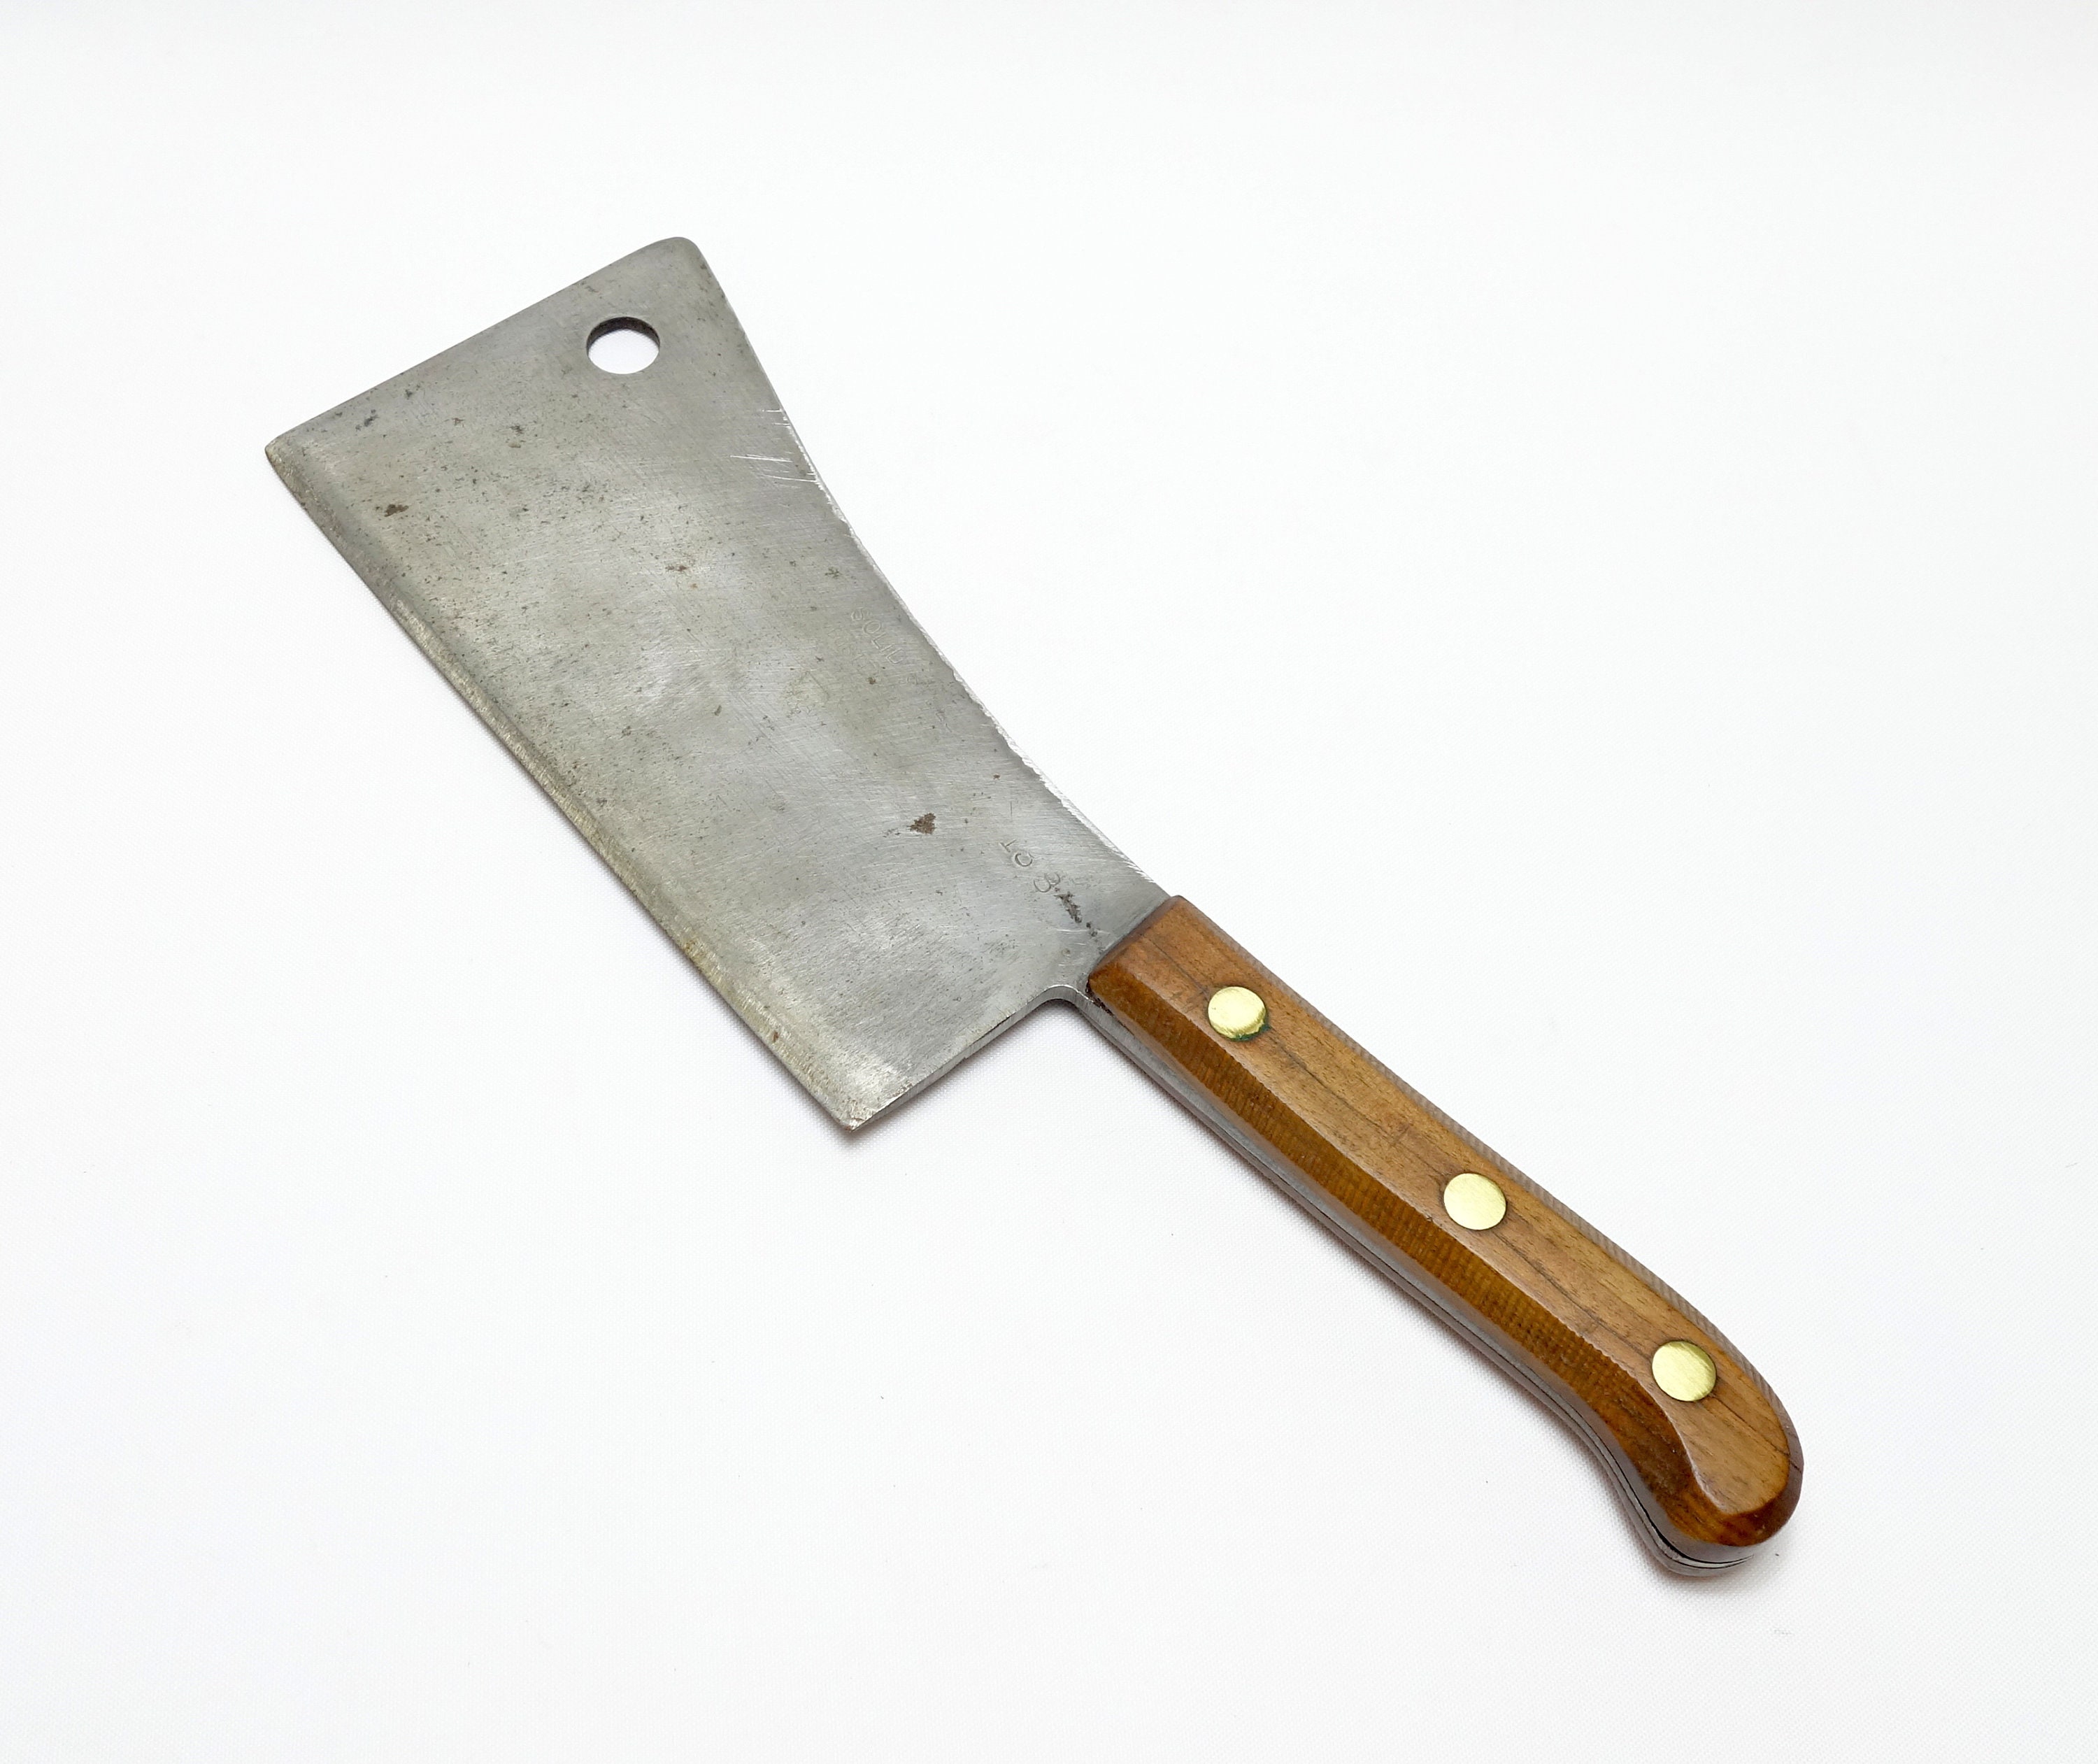 Gustav Emil Ern Meat Cleaver Butcher Solingen Germany 13 8 Blade